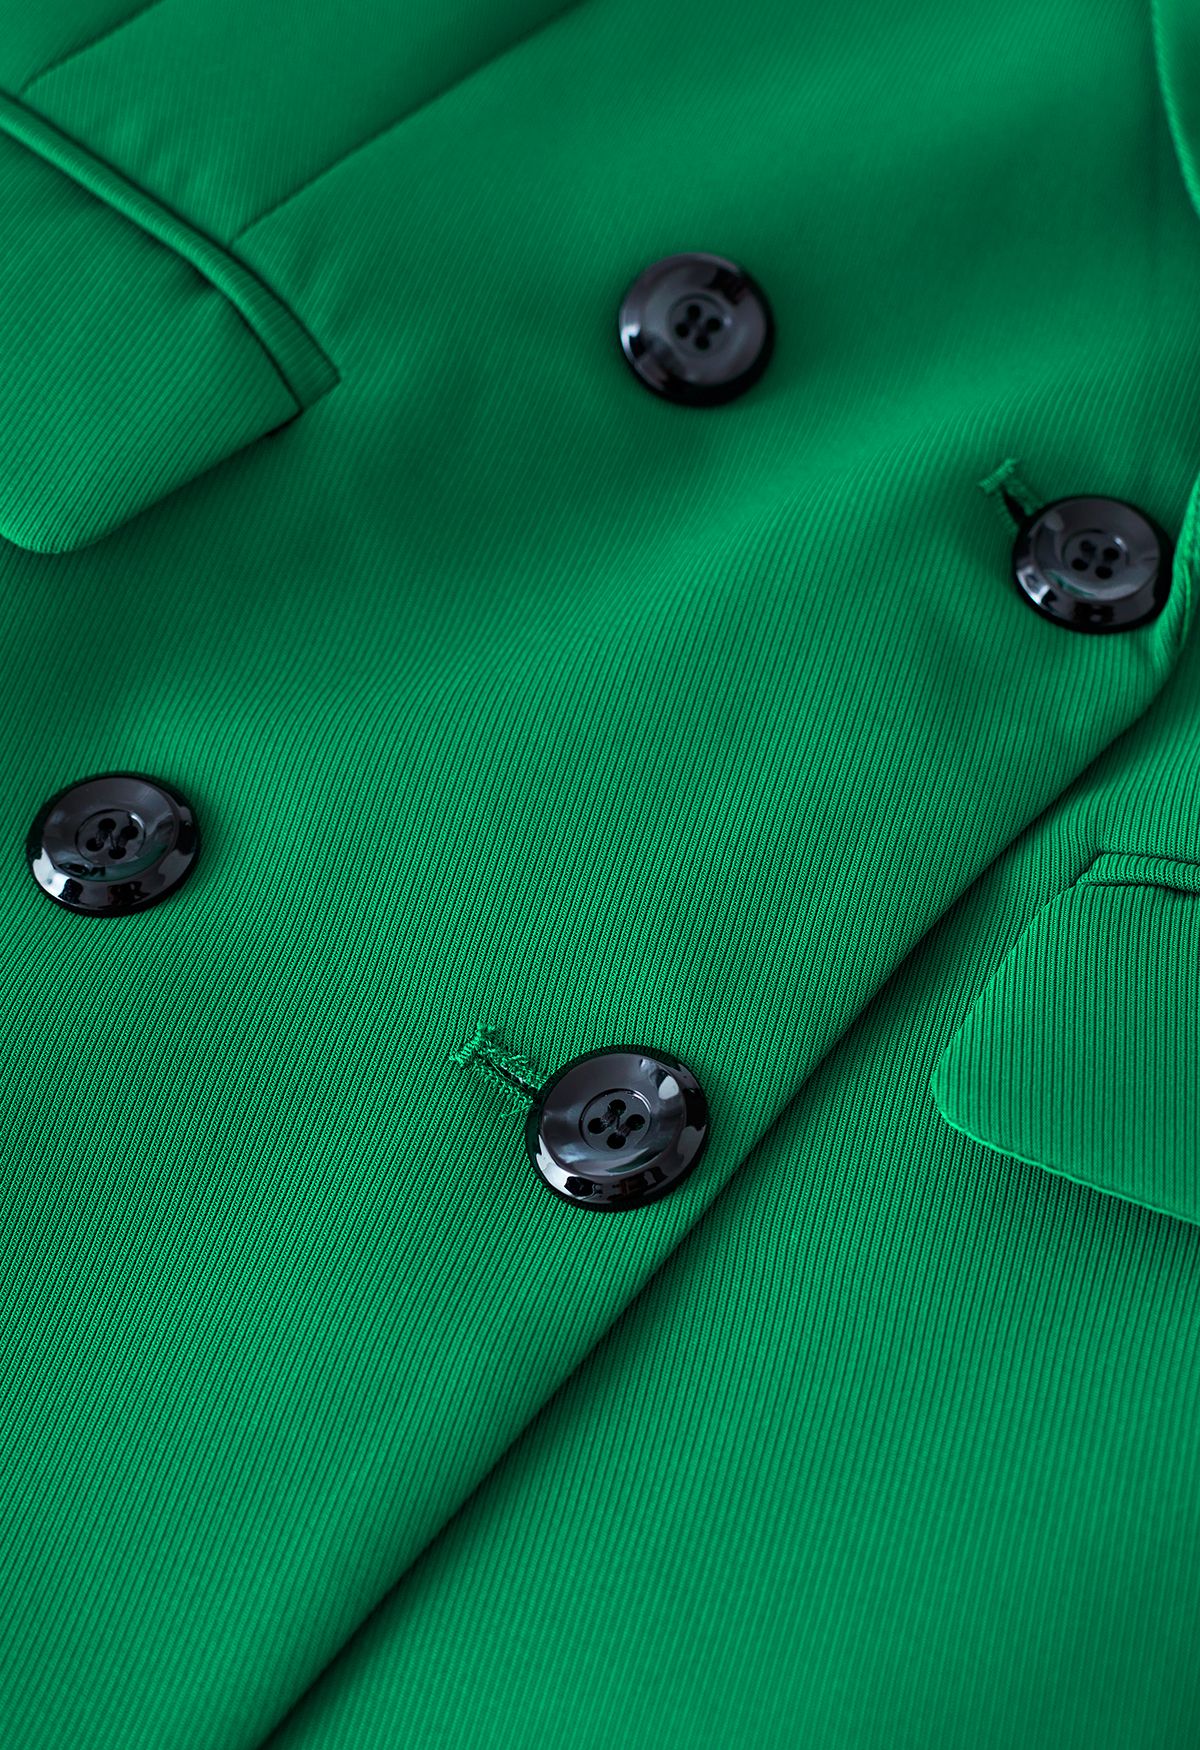 Conjunto de falda y blazer de color liso con insignia de abeja en verde